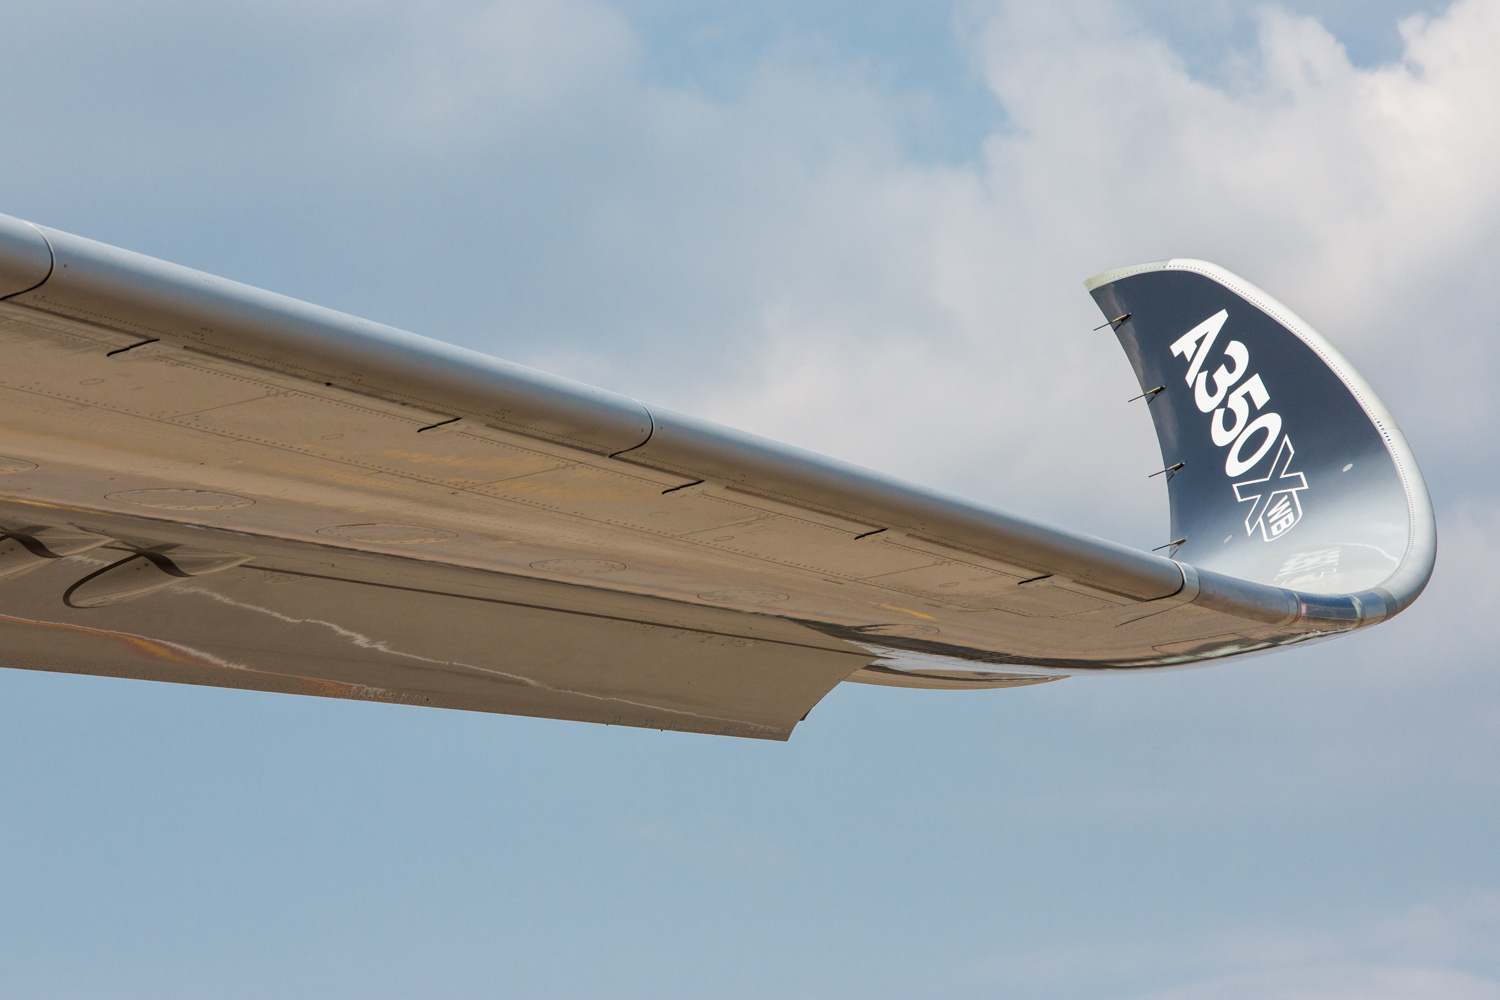 Logo de l'A350Xwb en bout d'aile